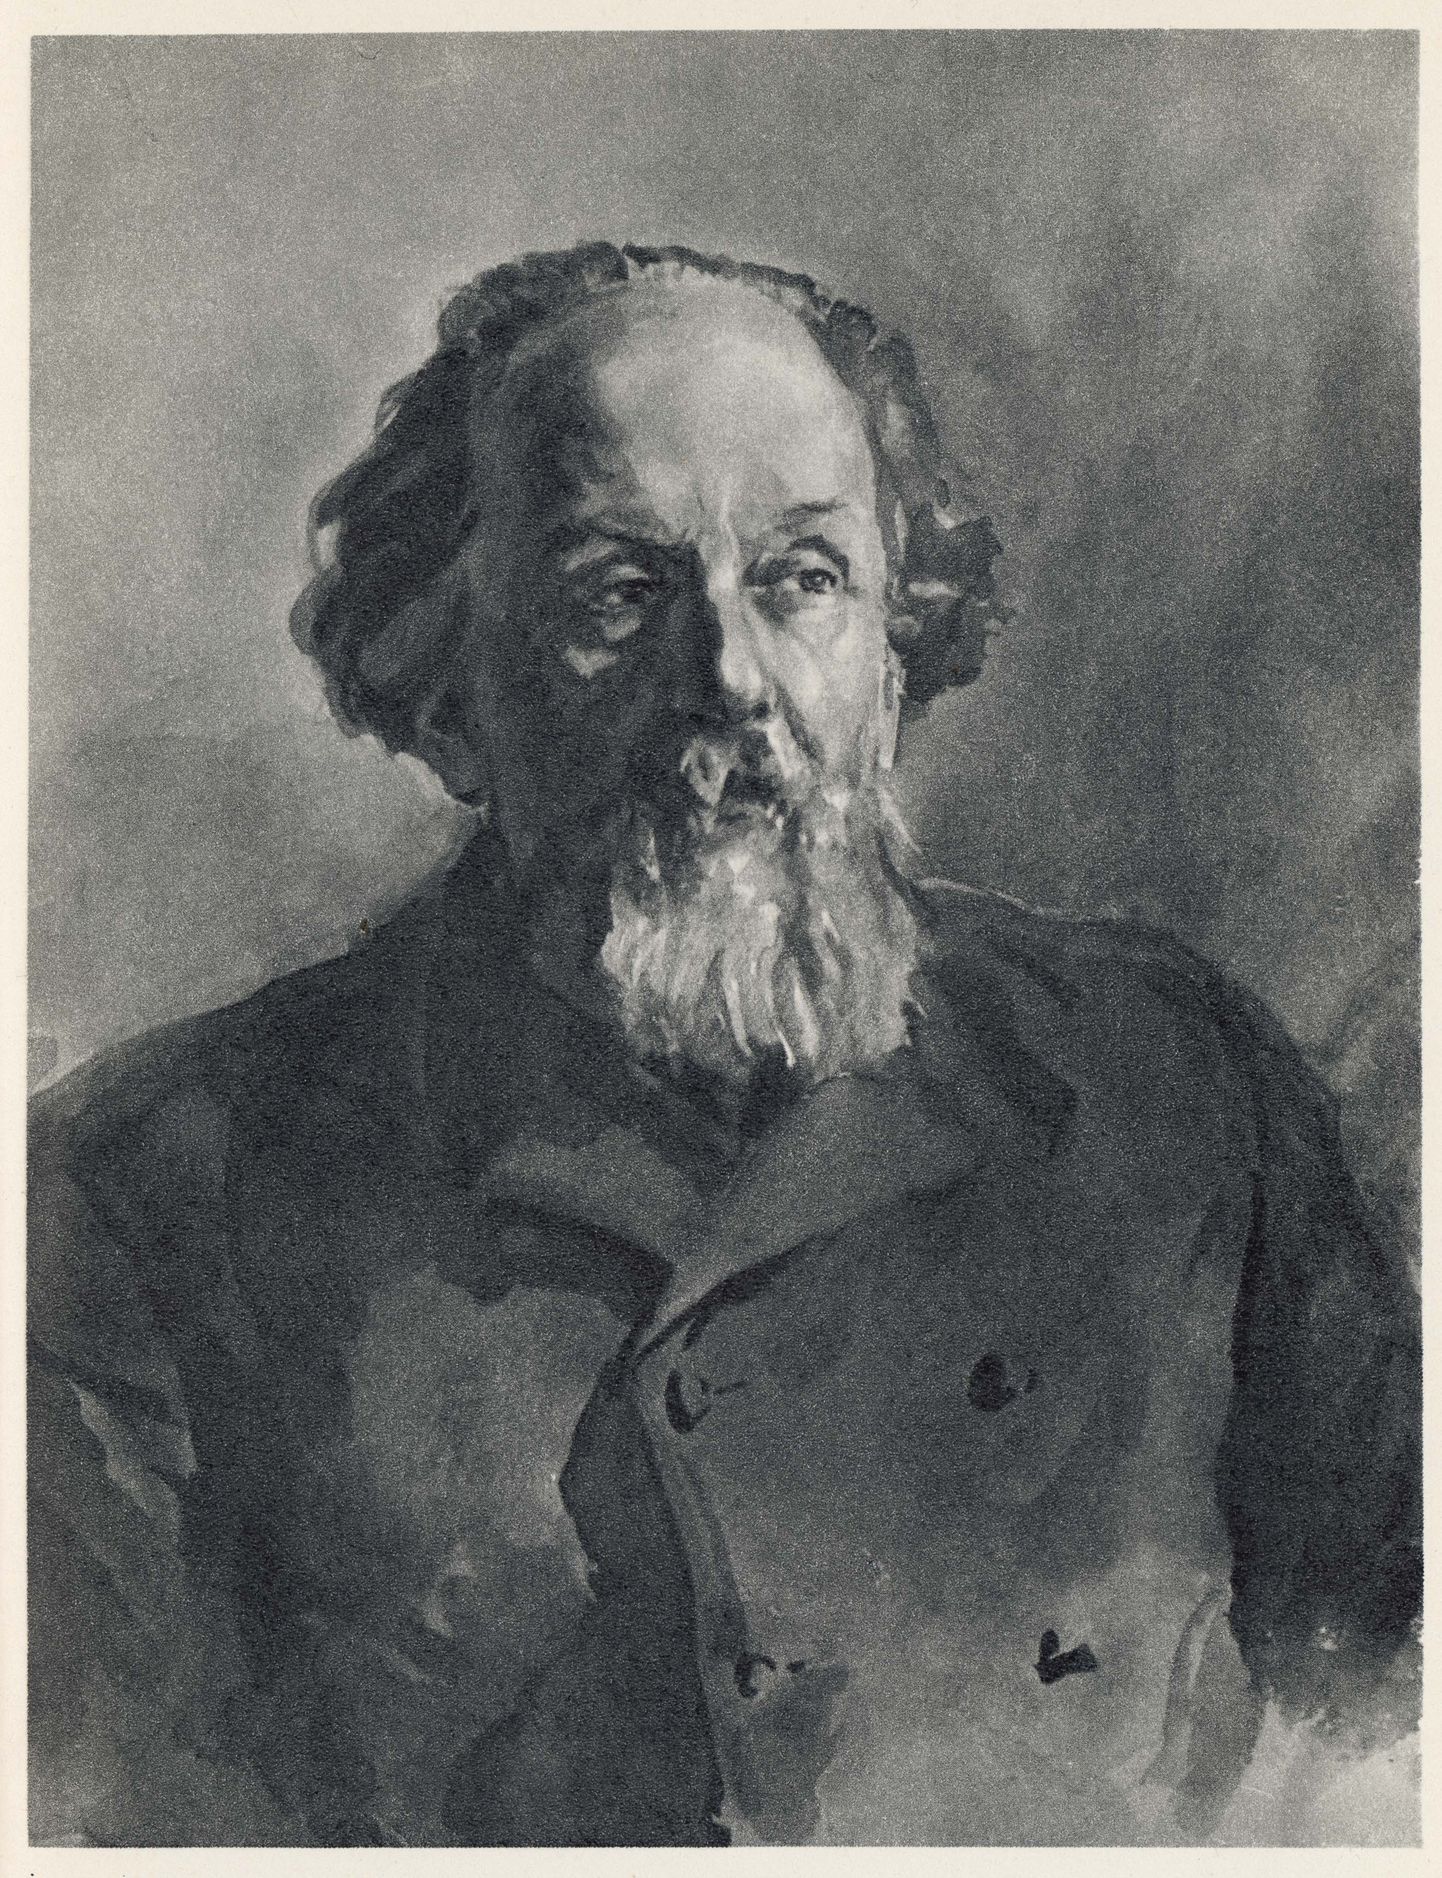 Konstantin Tsiolkovsky